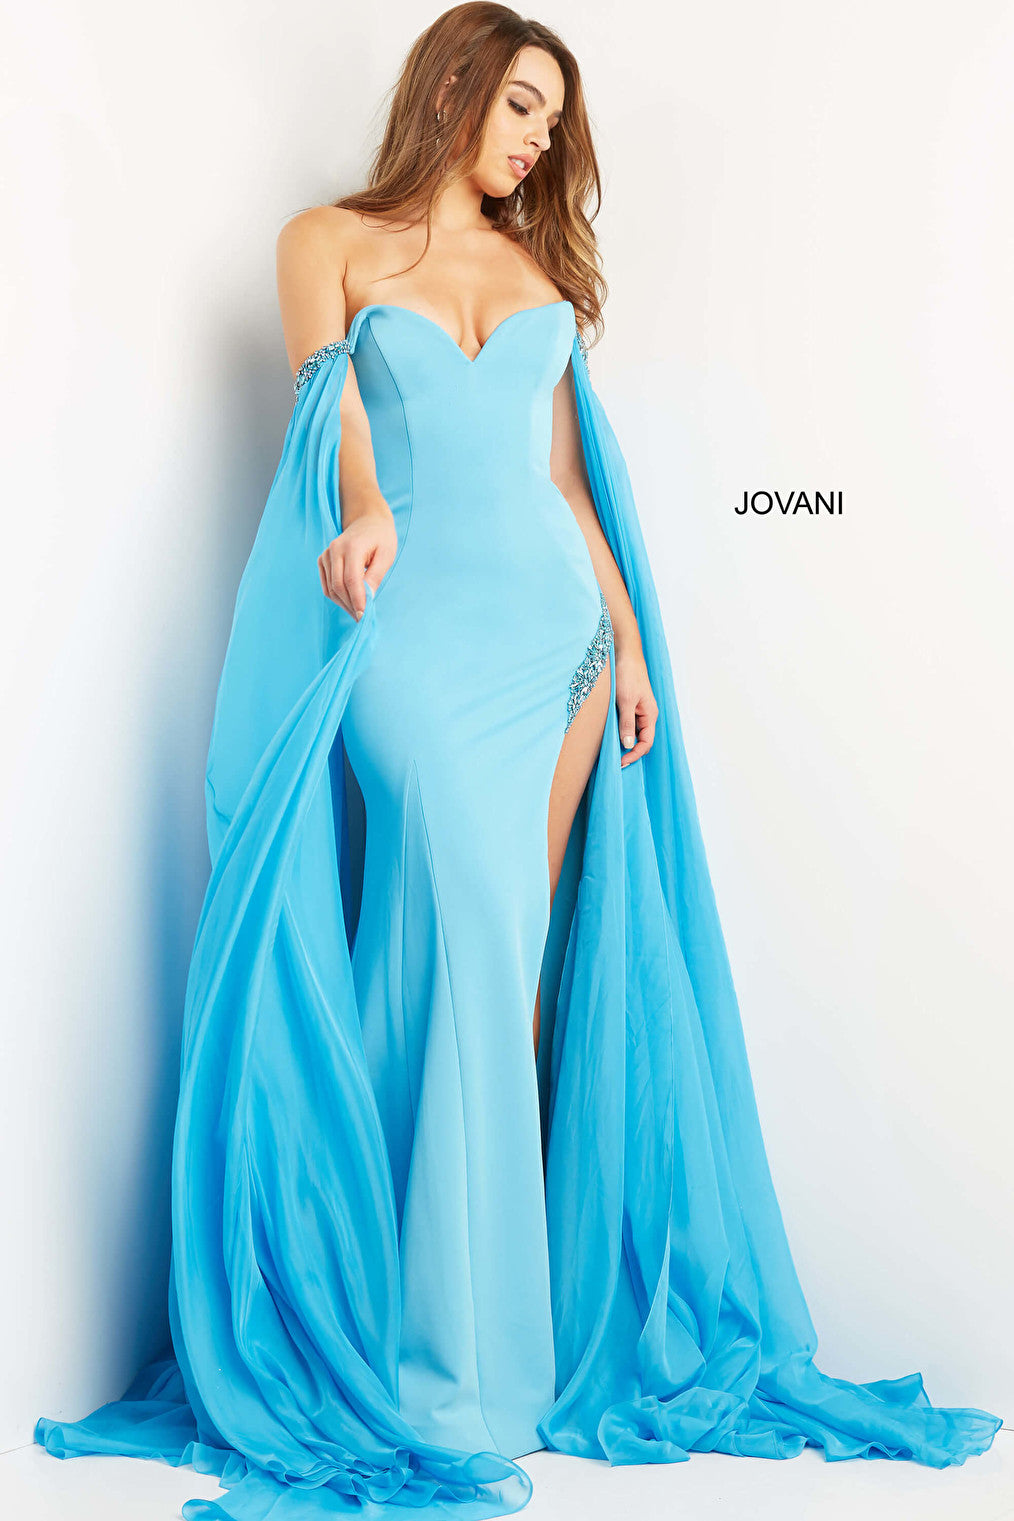 Jovani 7652 blue prom dress